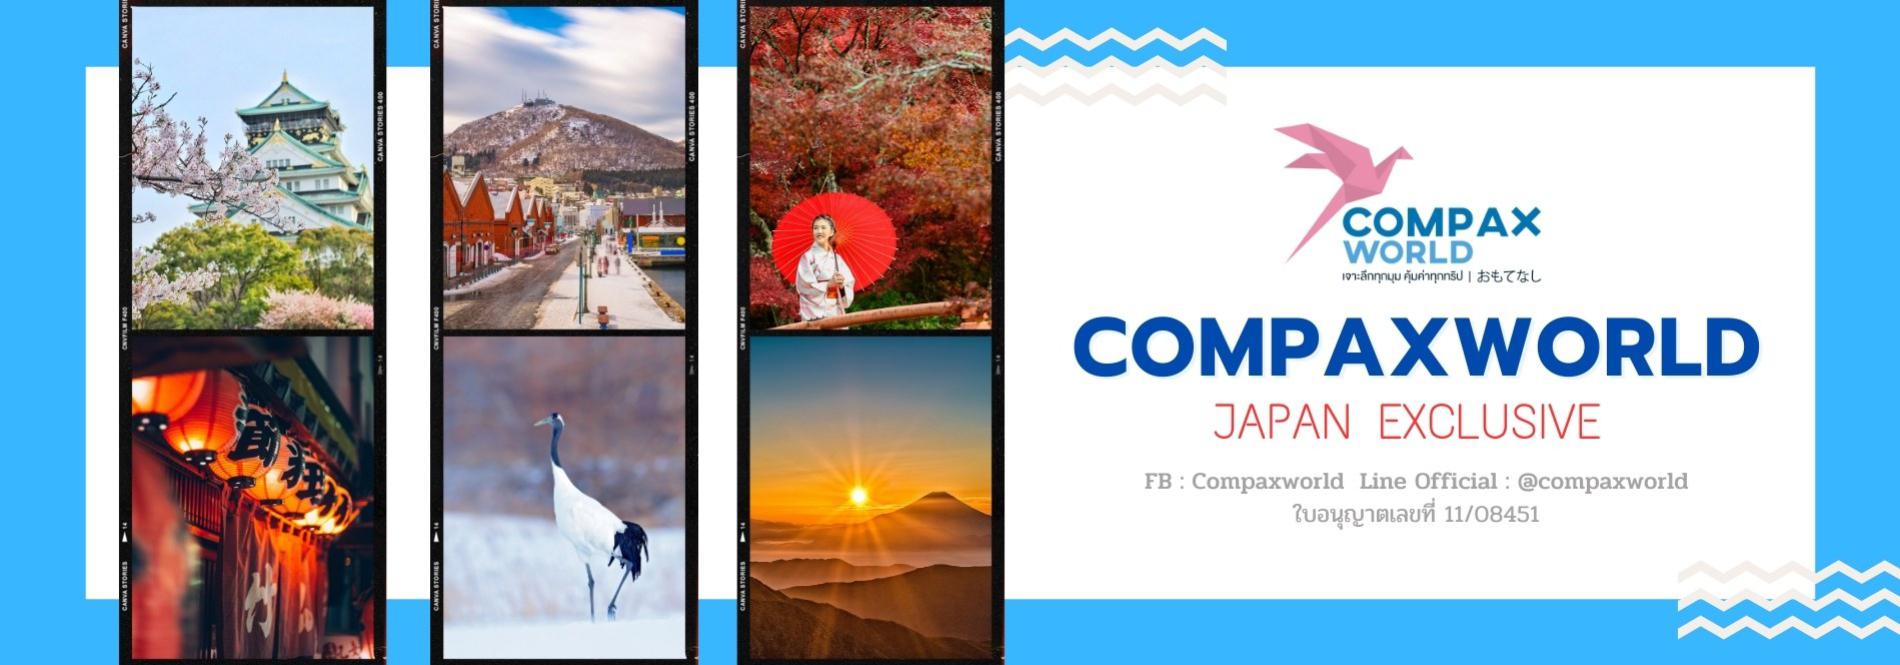 สัมผัสประสบการณ์การท่องเที่ยวประเทศญี่ปุ่นระดับพรีเมียม แบบเจาะลึกที่คุณจะไม่มีวันลืม ที่พักสุดหรู อาหารดี มีสไตล์ CompaxWorld ทัวร์ญี่ปุ่นพรีเมียม สัมผัสประสบการณ์วัฒนธรรมญี่ปุ่นแท้ ๆ